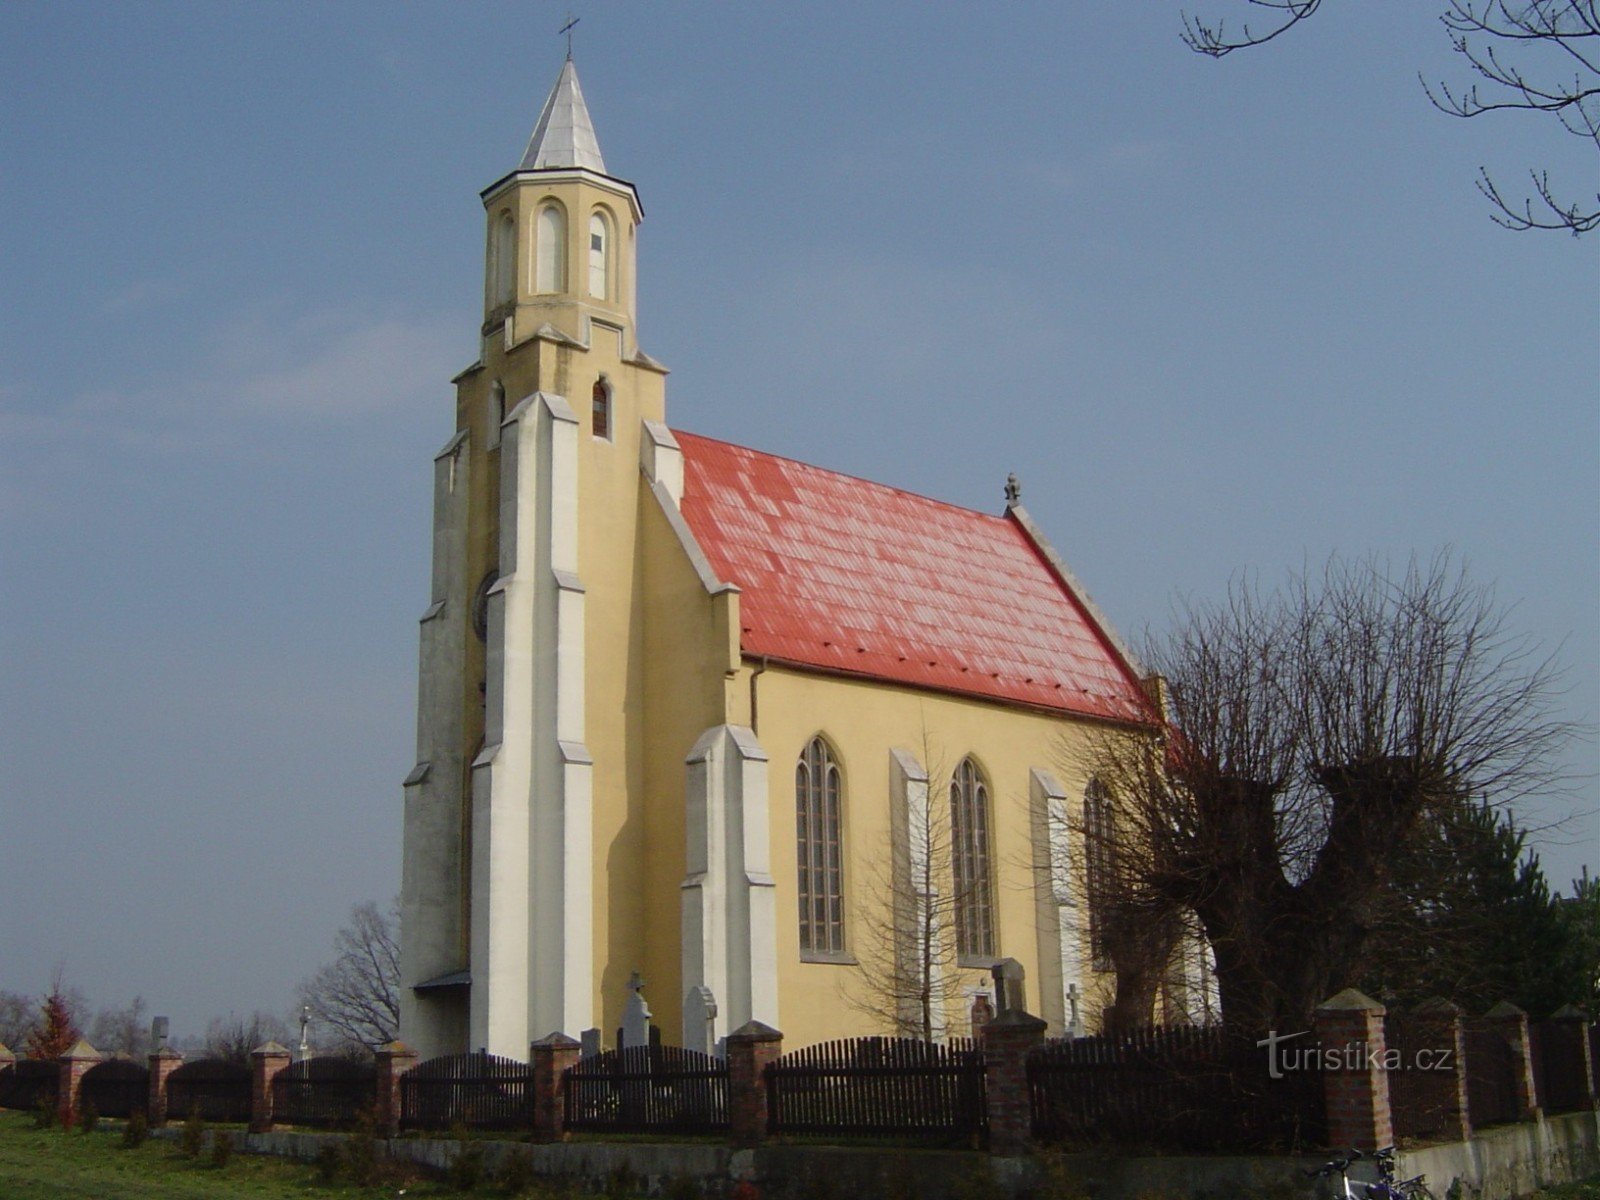 Андріївська церква в Слезске-Павловіце